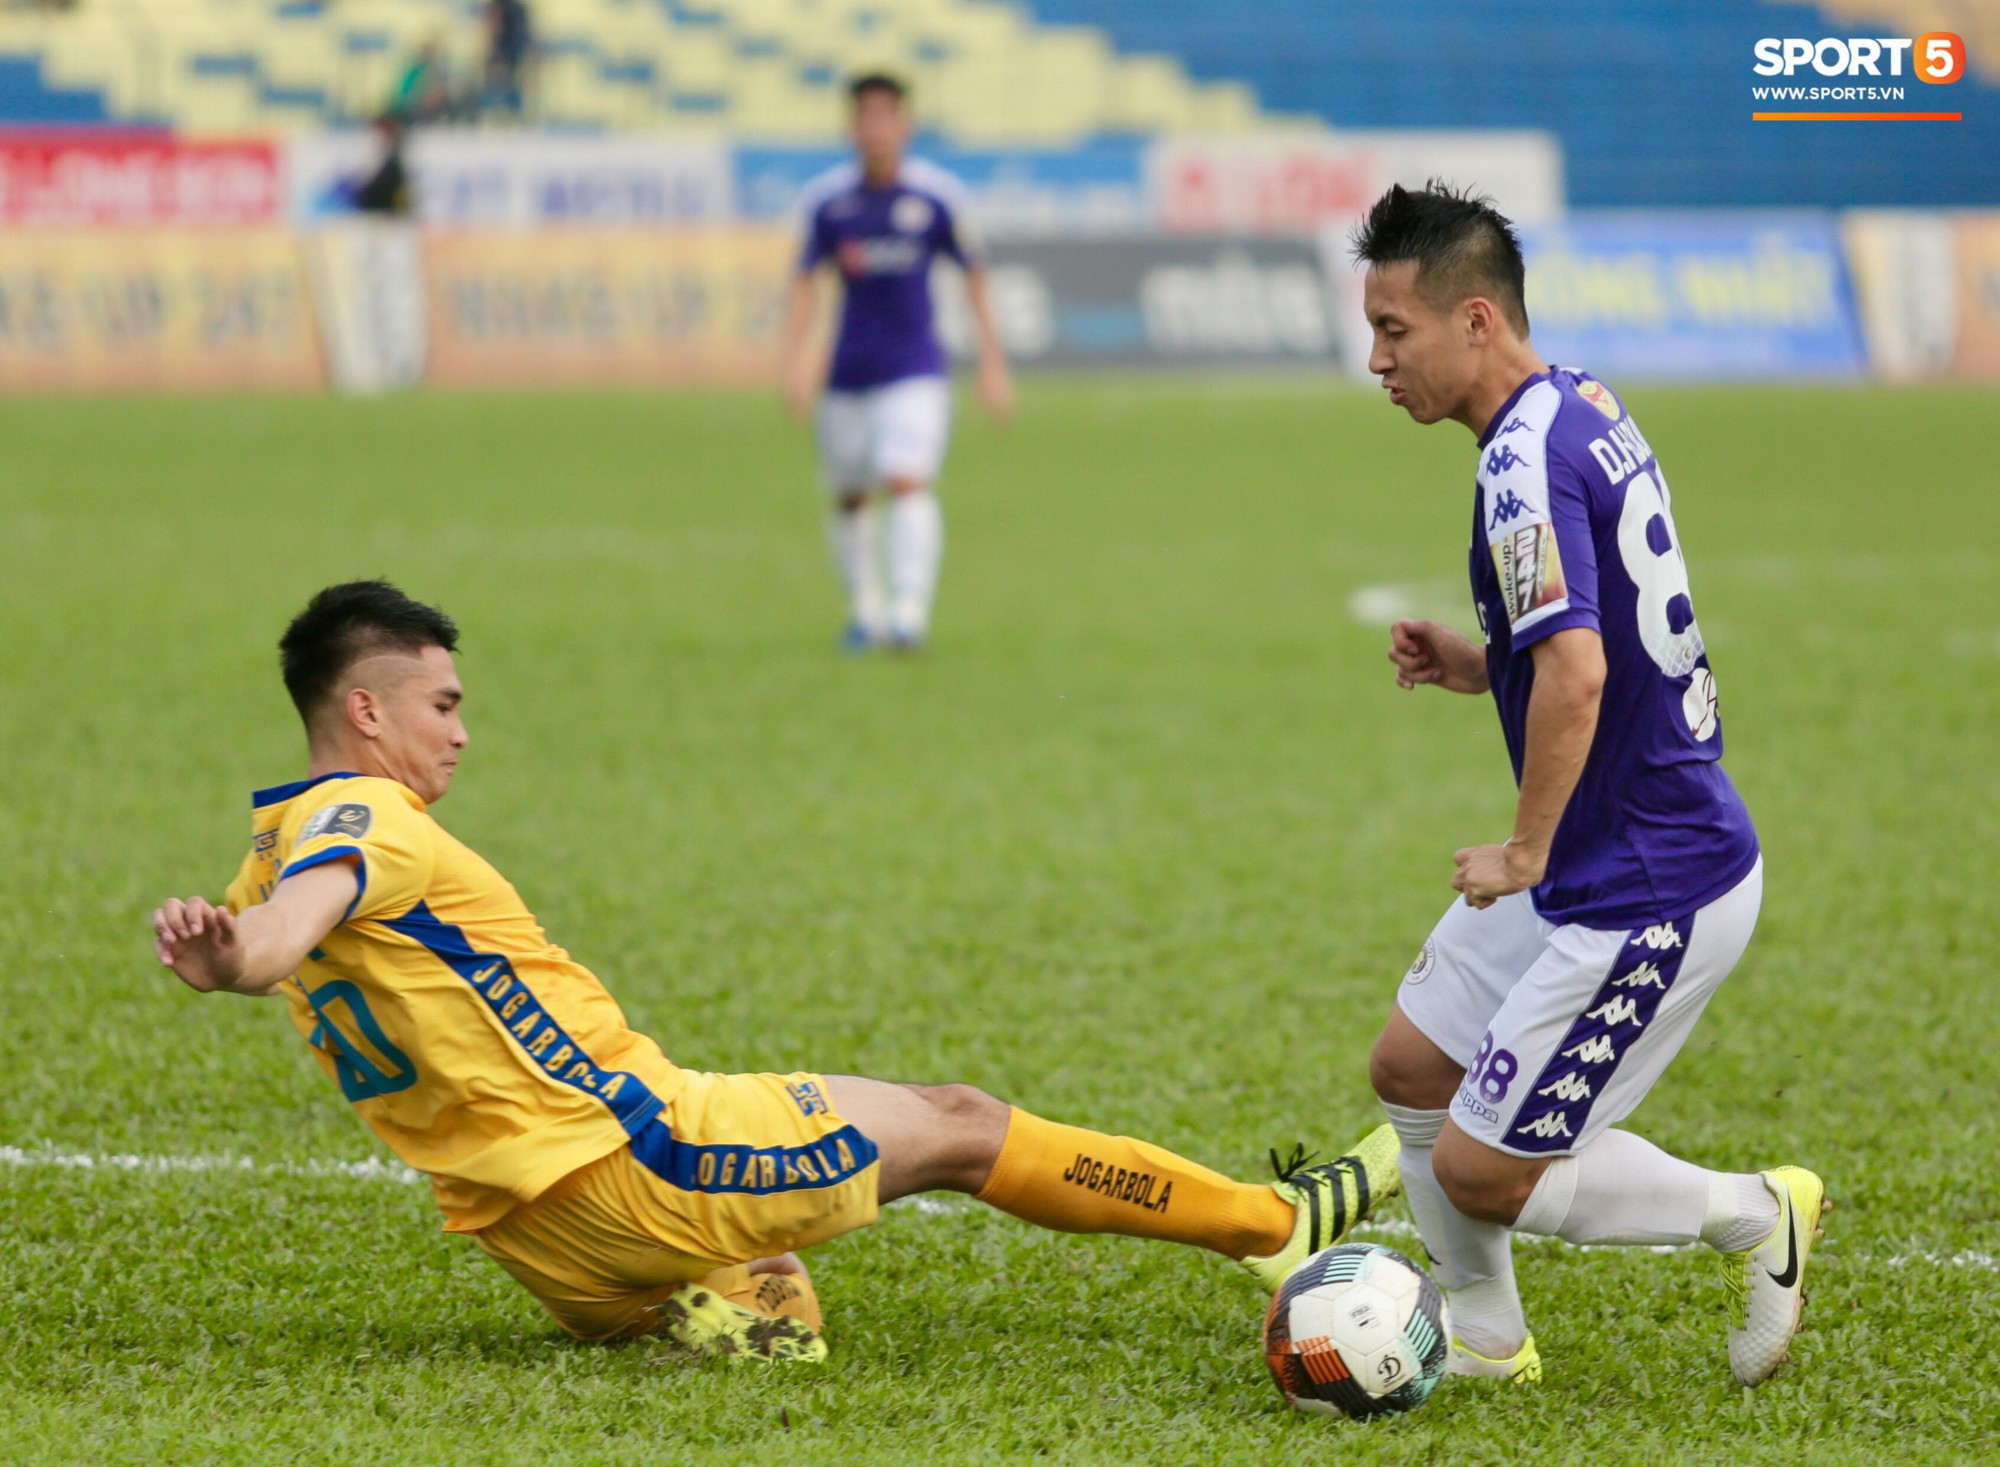 HLV trưởng Hà Nội FC lên tiếng: Thẻ đỏ của Đình Trọng là quá nặng - Ảnh 4.